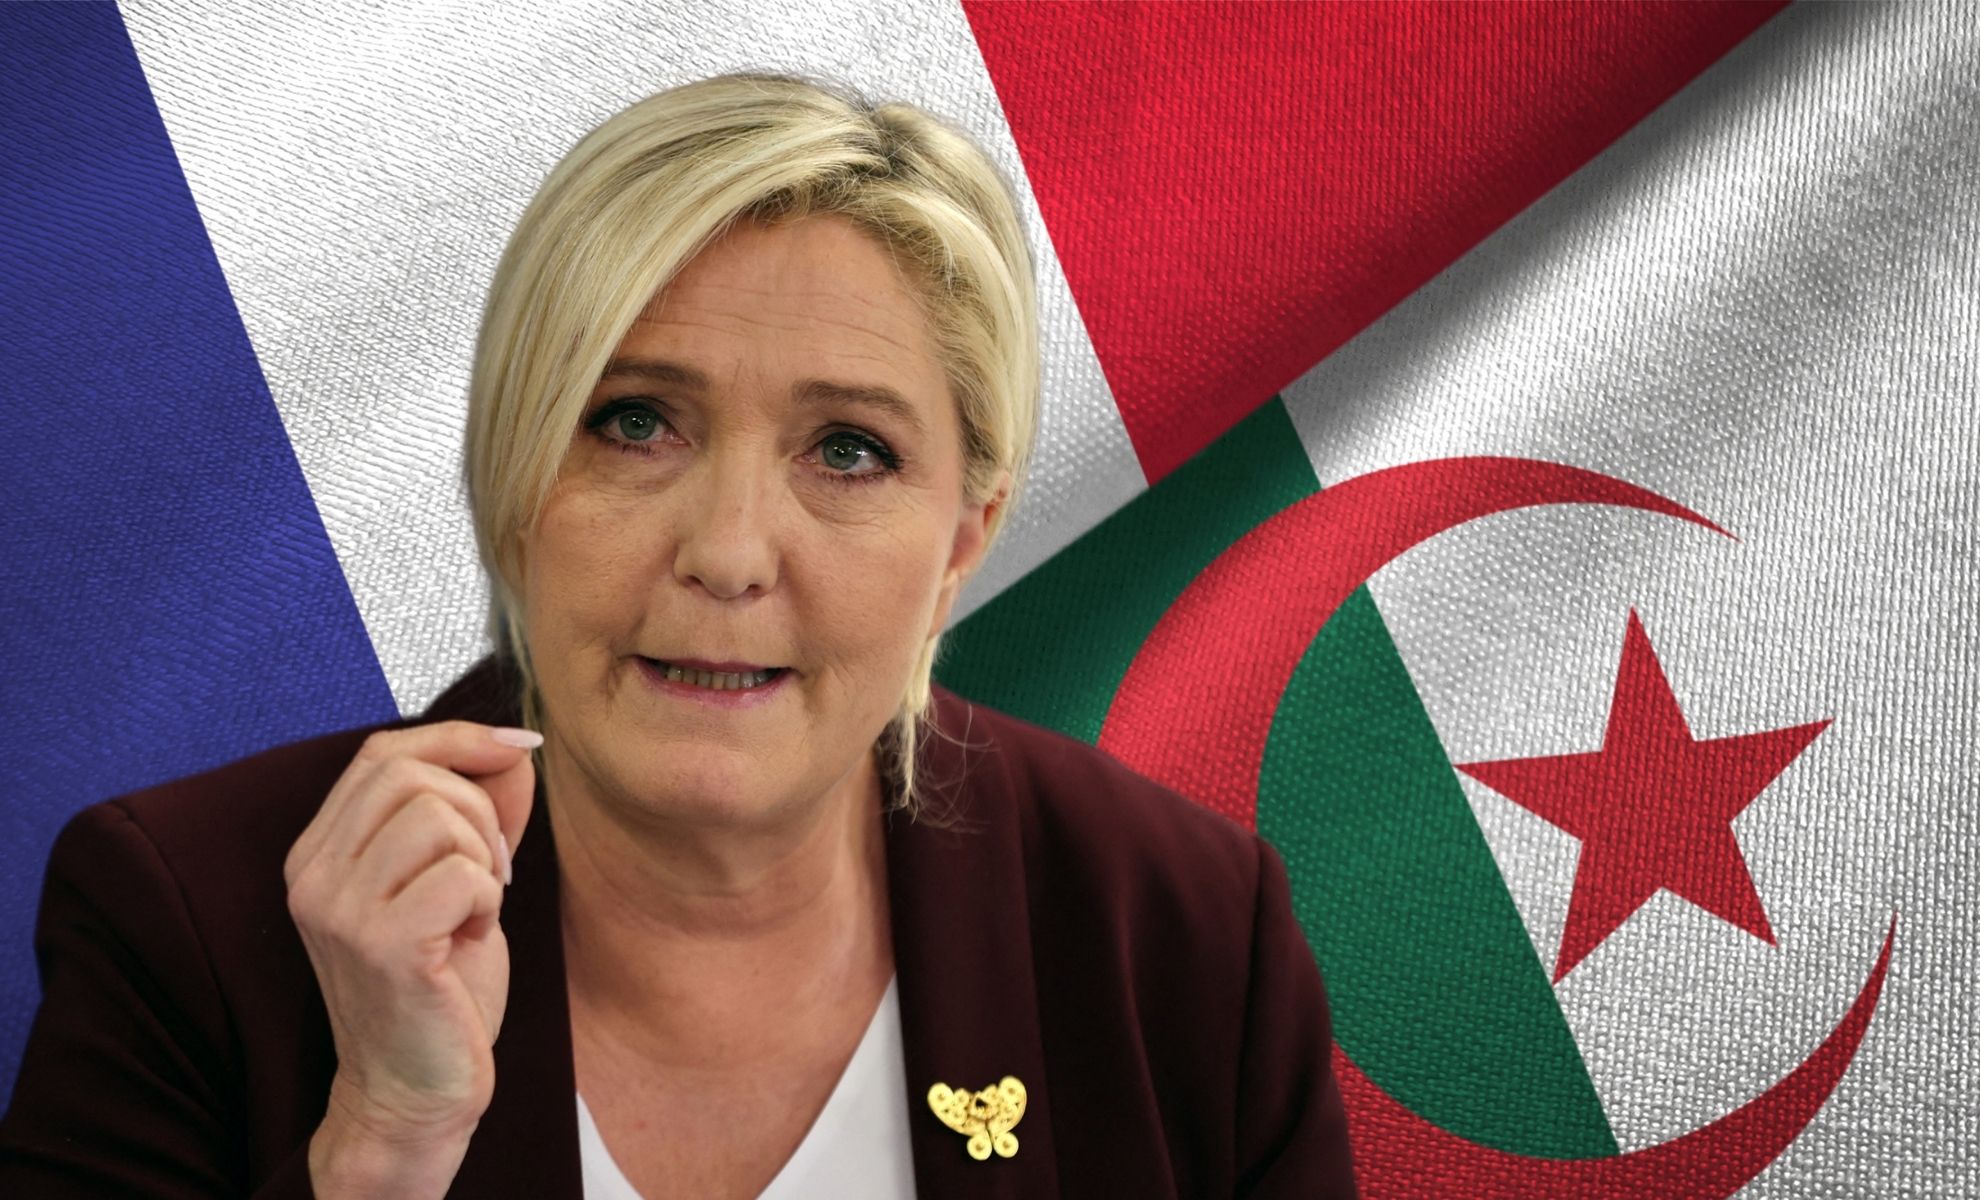 Marine Le Pen sur les deux drapeaux de la France et de l'Algérie